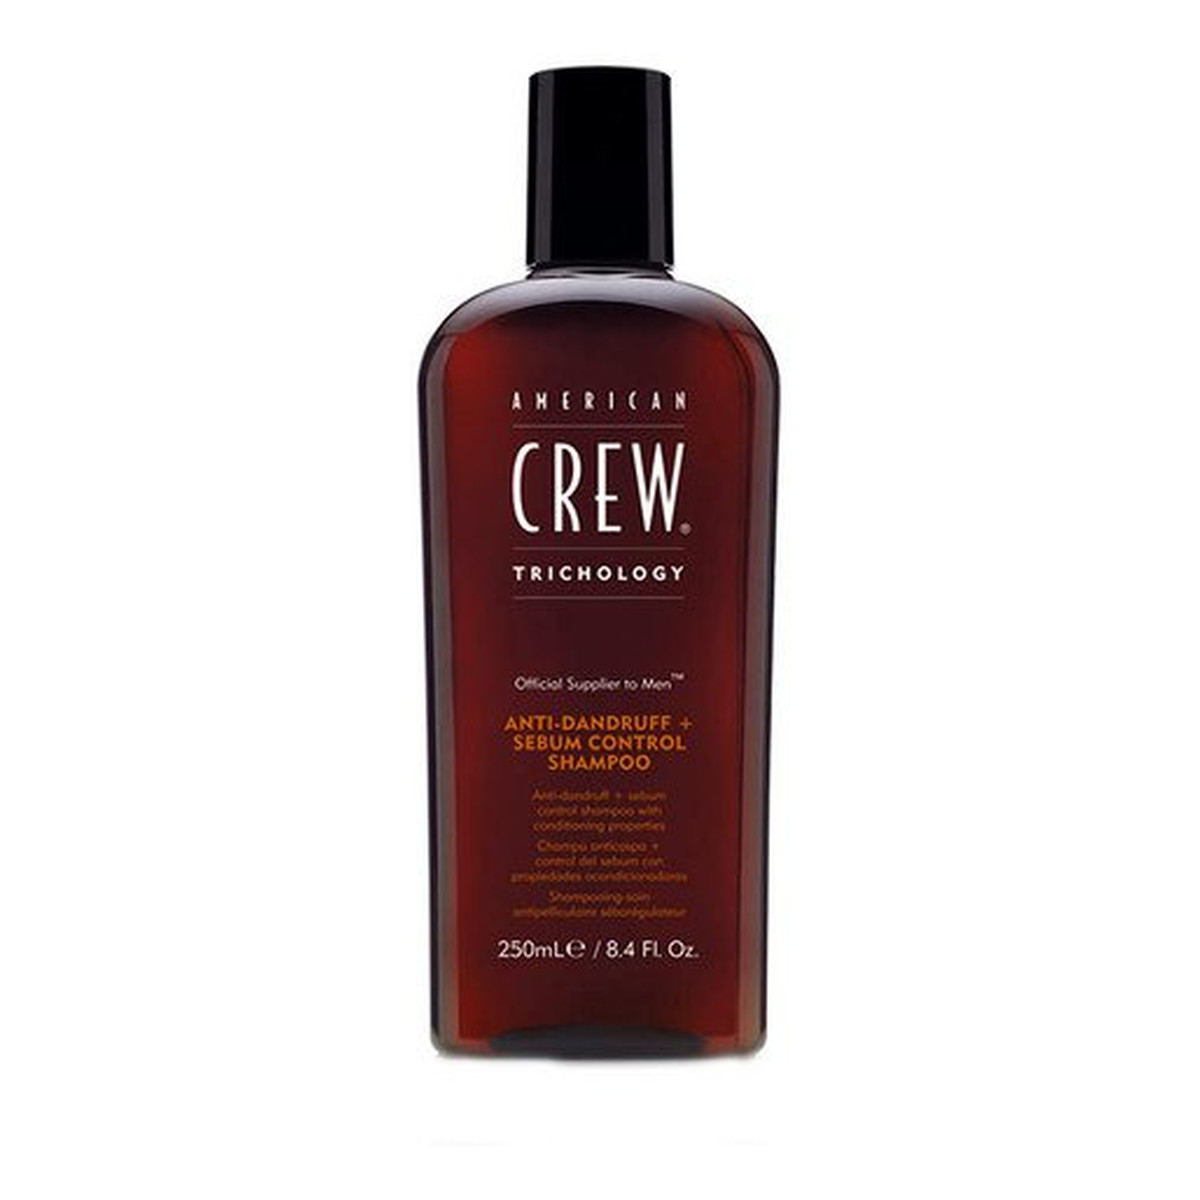 American Crew Trichology Anti-Dandruff + Sebum Control Shampoo Szampon przeciwłupieżowy do włosów 250ml